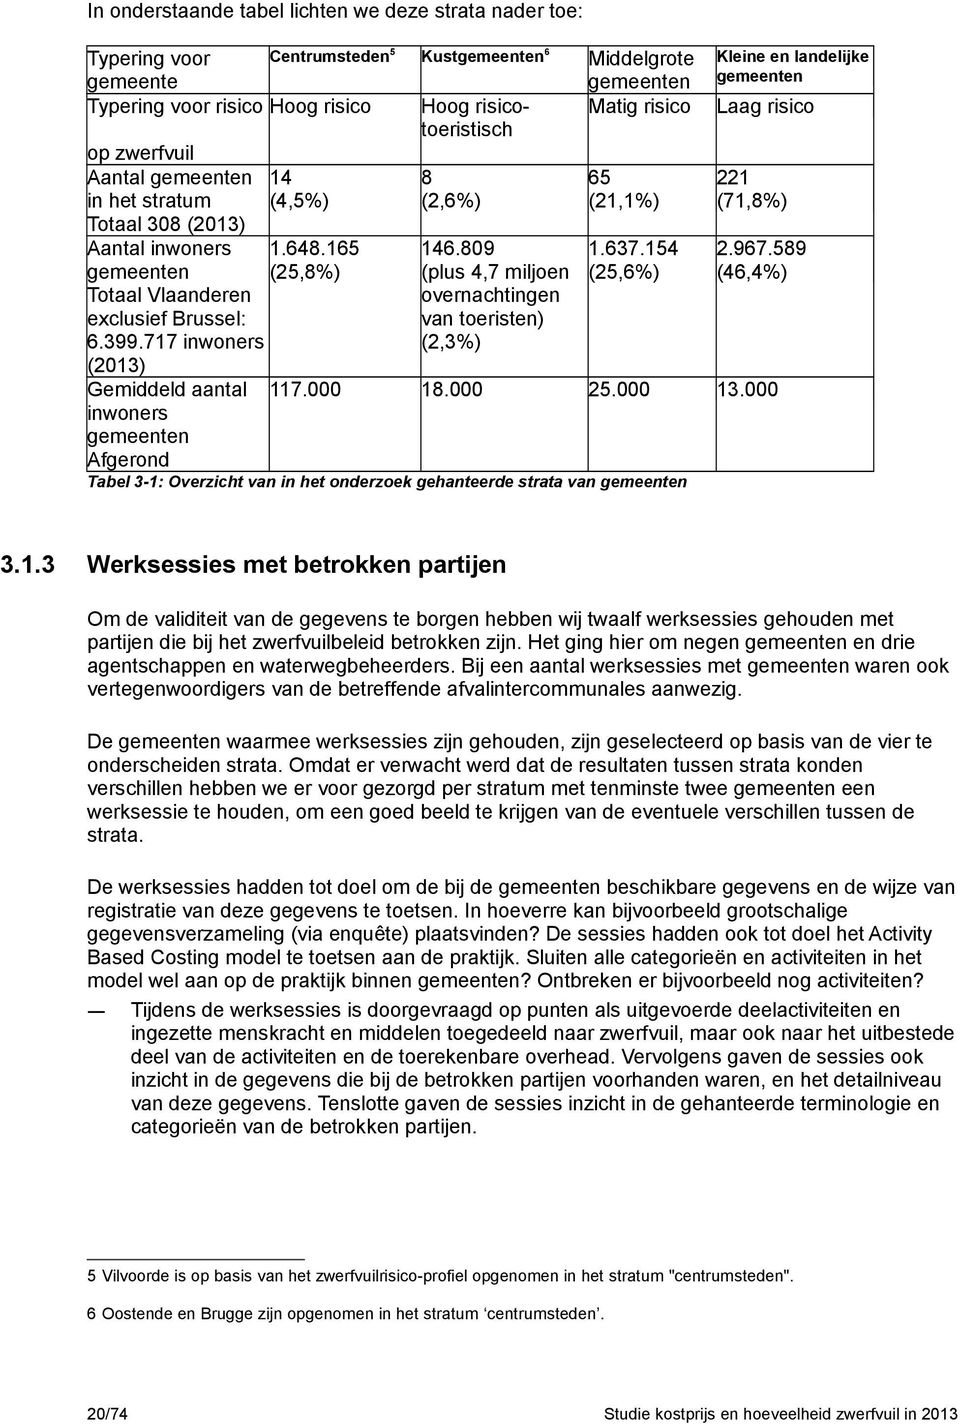 000 inwoners gemeenten Afgerond Kustgemeenten6 Hoog risicotoeristisch 8 (2,6%) Middelgrote gemeenten Matig risico Kleine en landelijke gemeenten 65 (21,1%) 221 (71,8%) Laag risico 146.809 1.637.